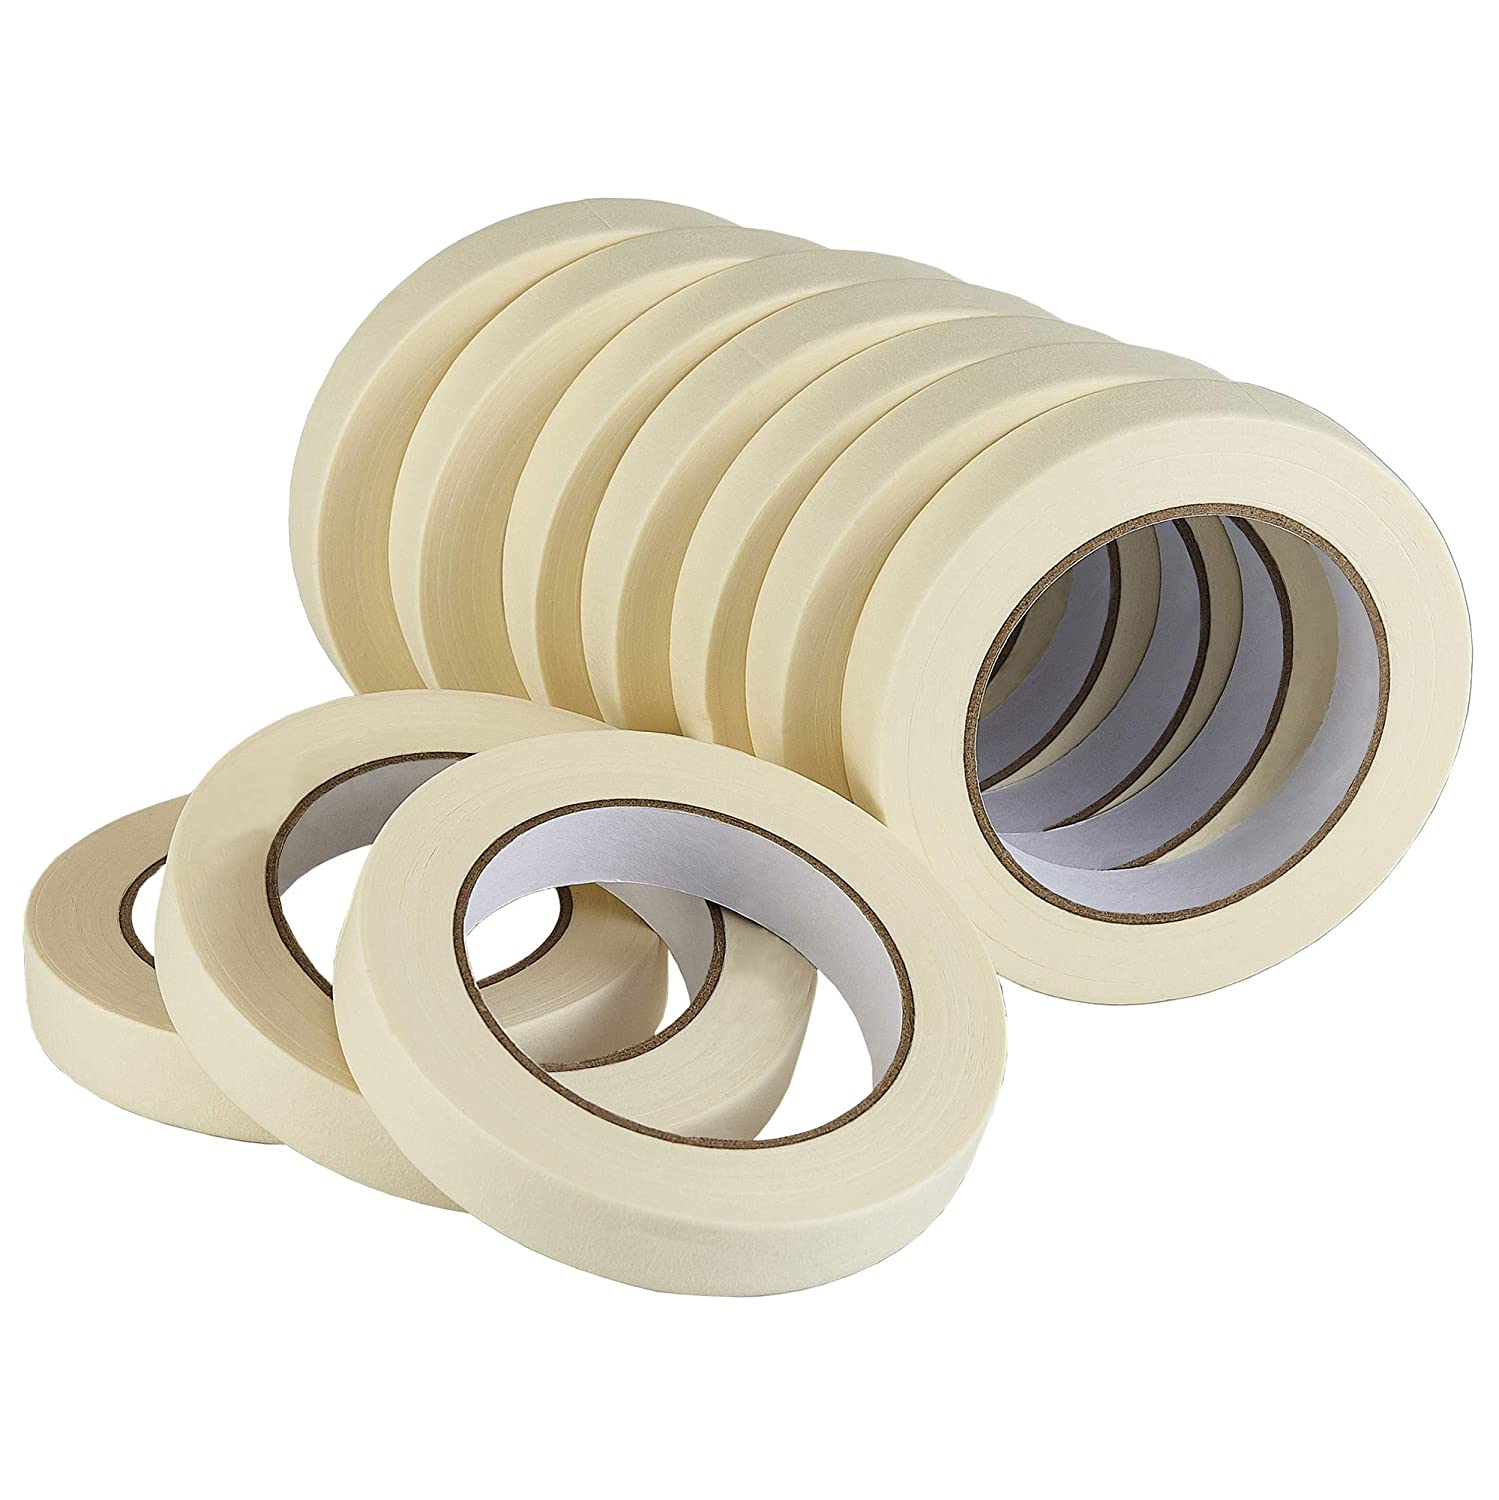 Lichamp Easy Tear Sealing Masking Tape, 10-Pack